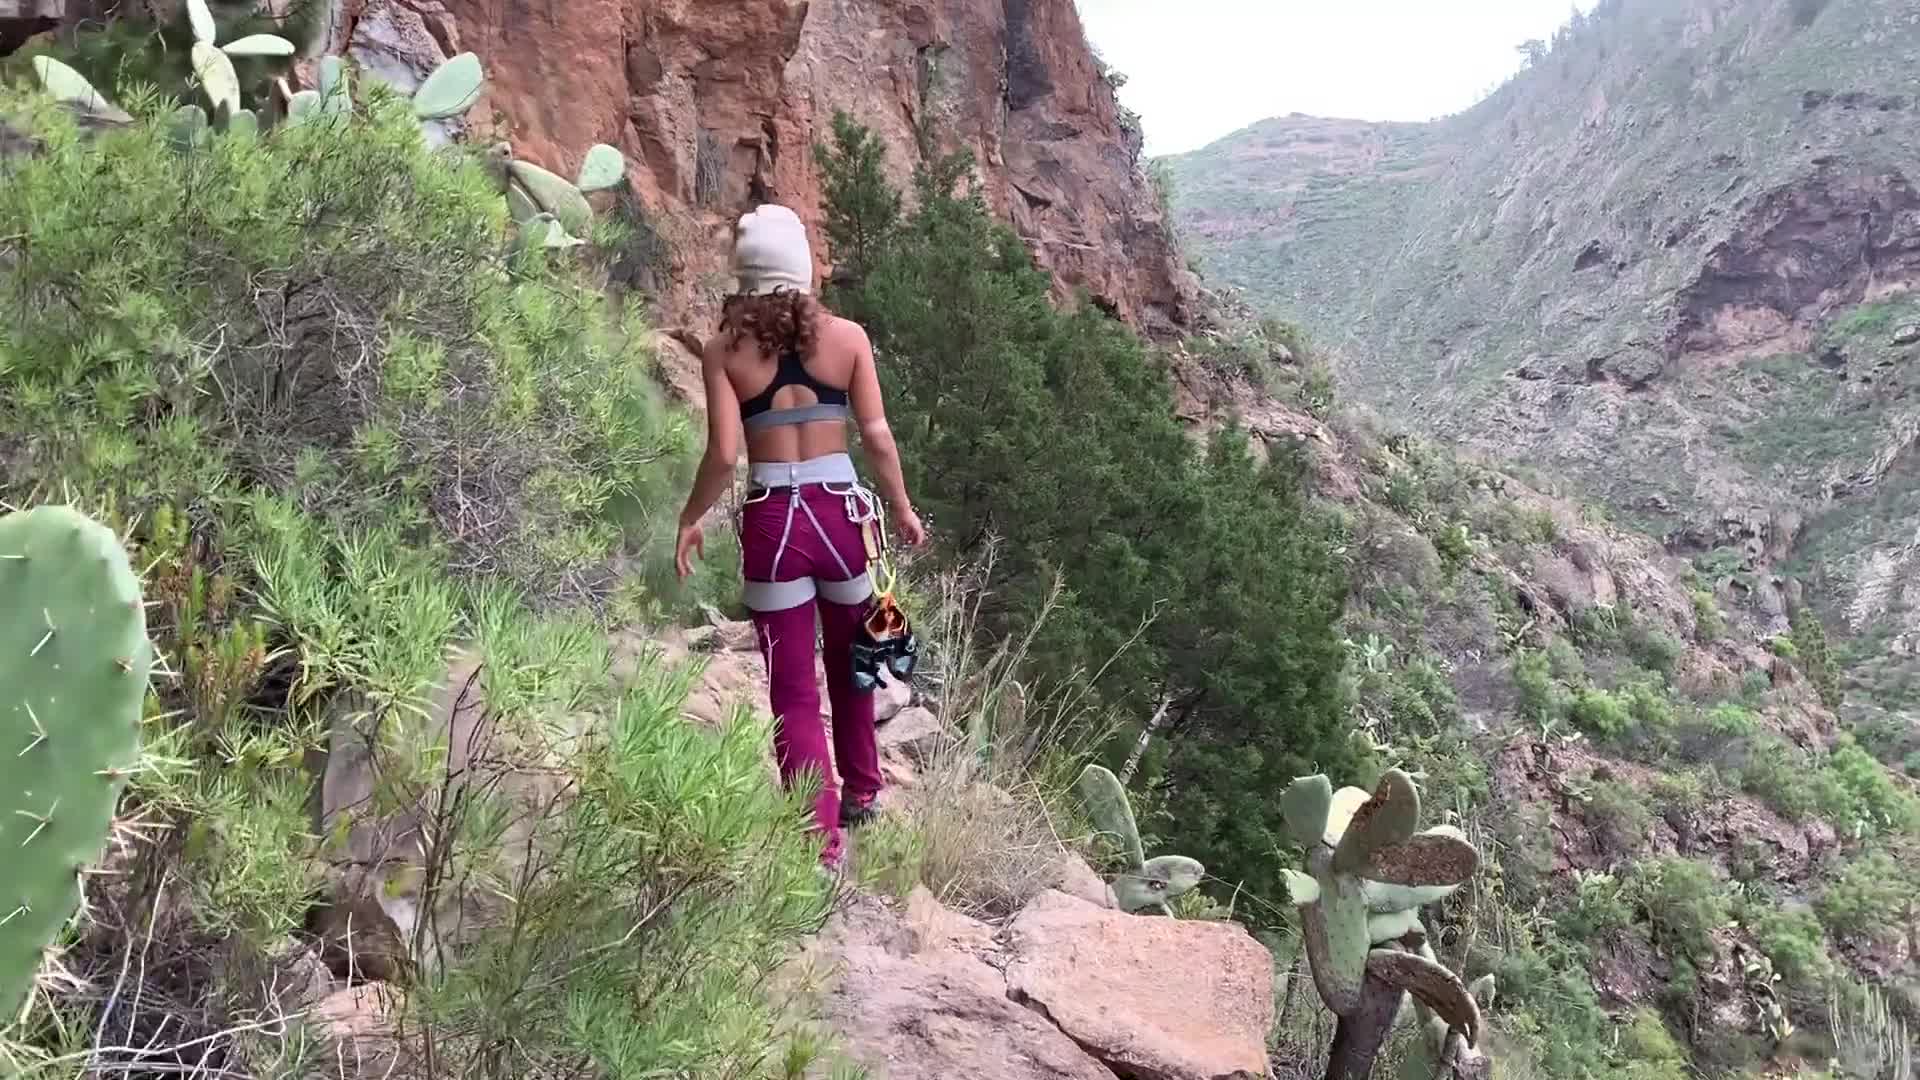 Crazy par klatre knulle hverandre på toppen av et fjell - Videos bilde